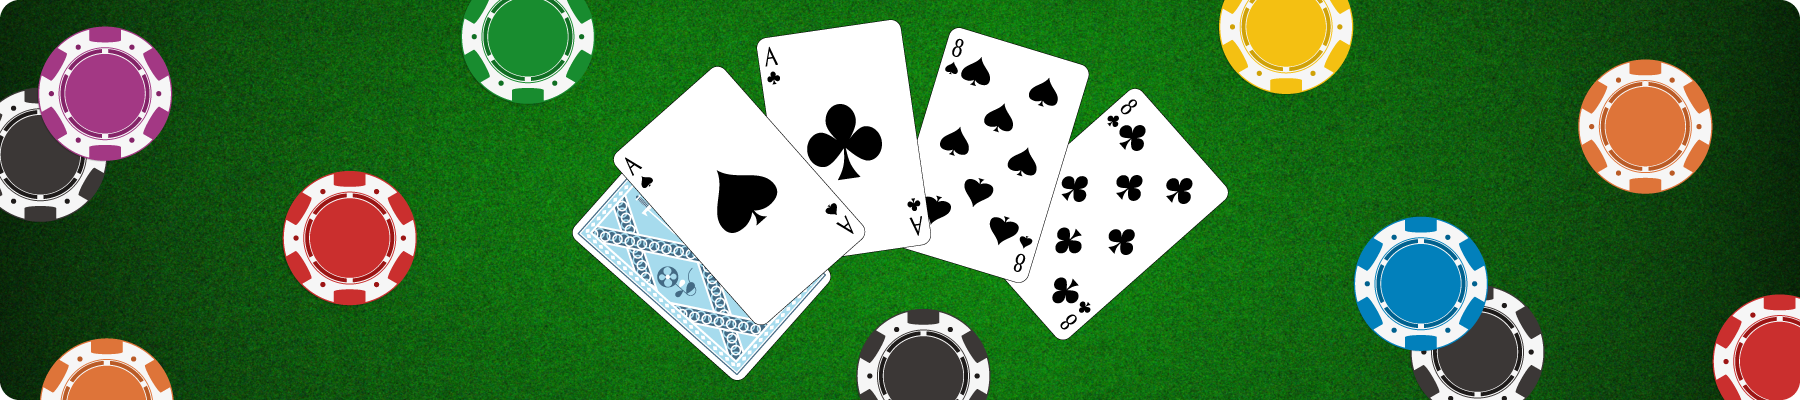  Como jogar pôquer: guia passo a passo para iniciantes